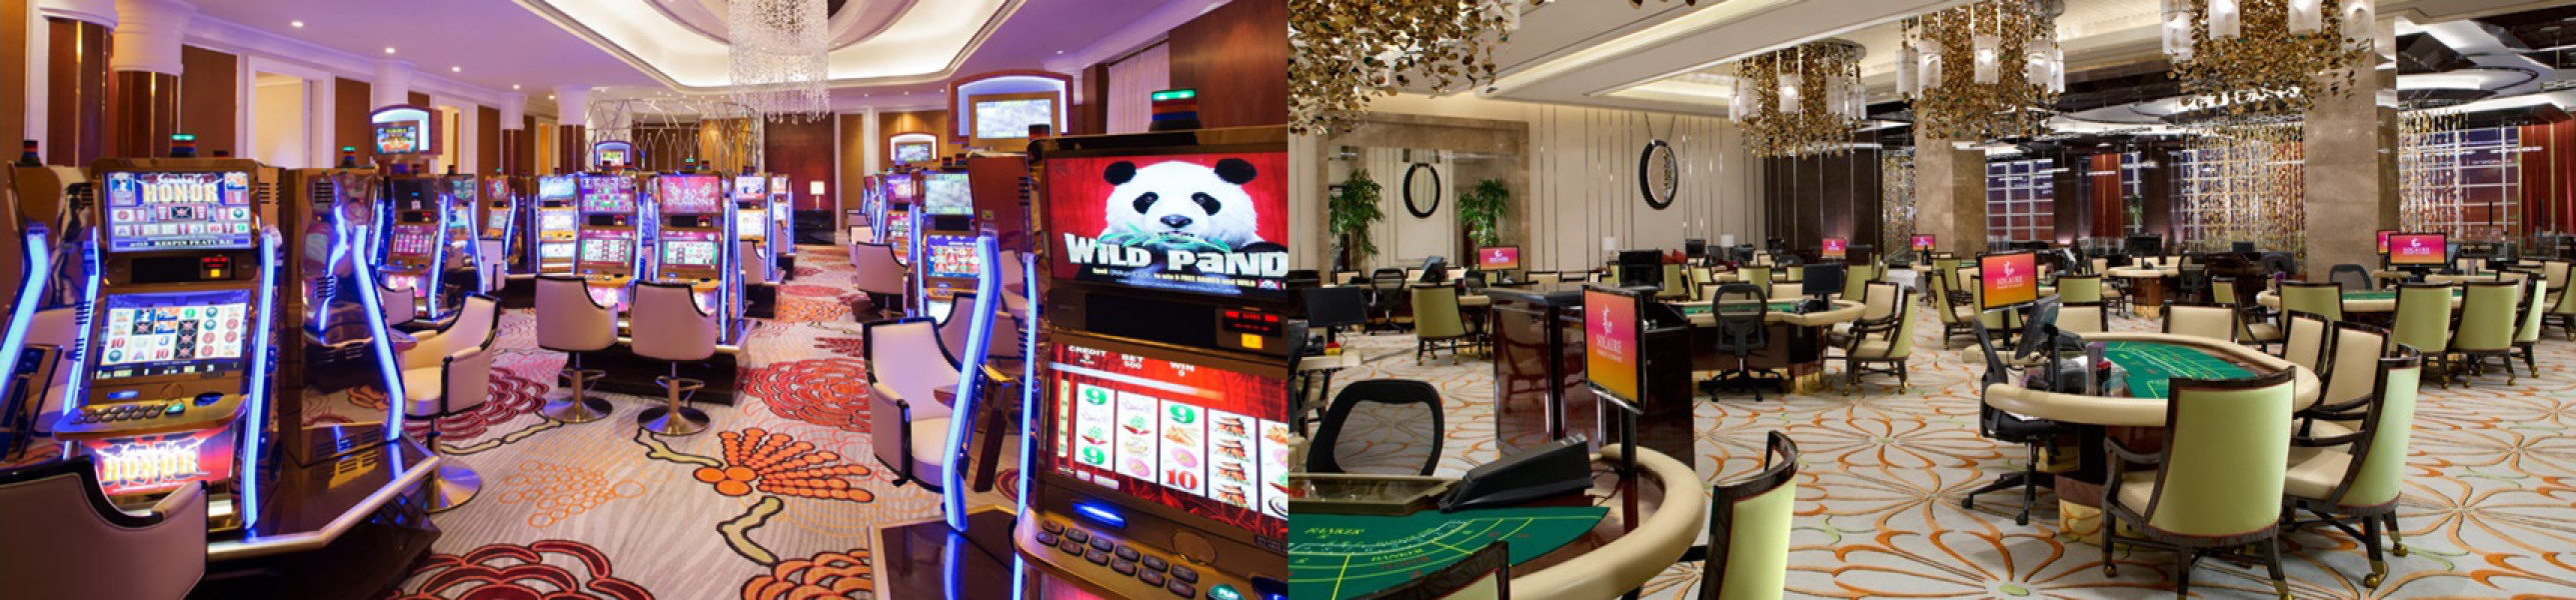 Solaire Resort & Casino - Wikipedia